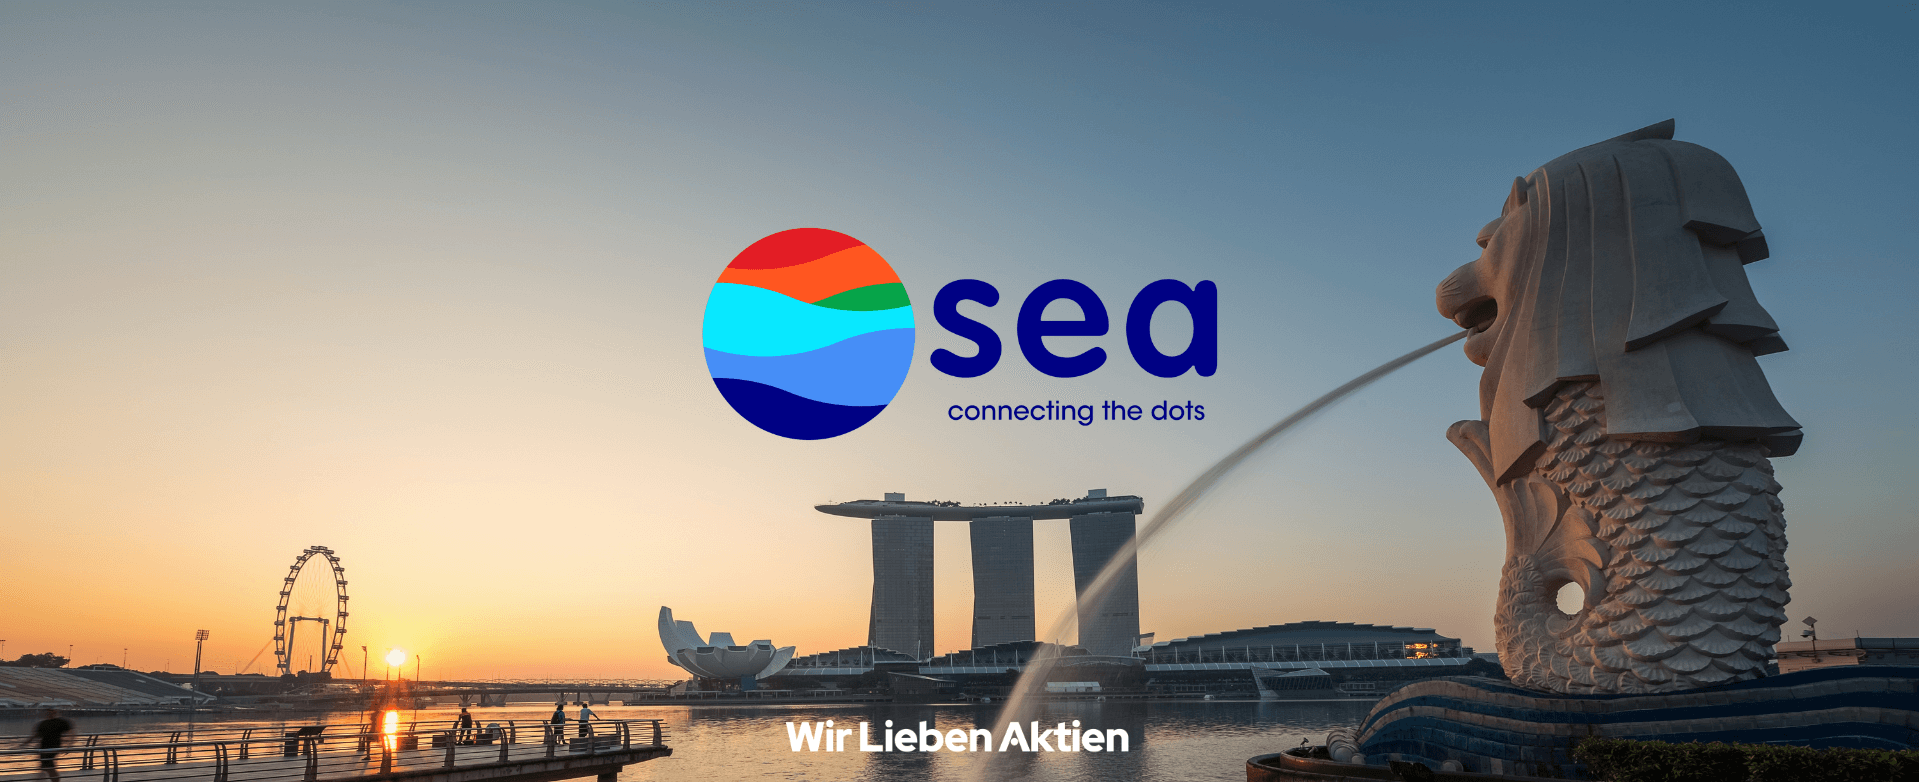 Sea Ltd Aktienanalyse Einleitungsbild